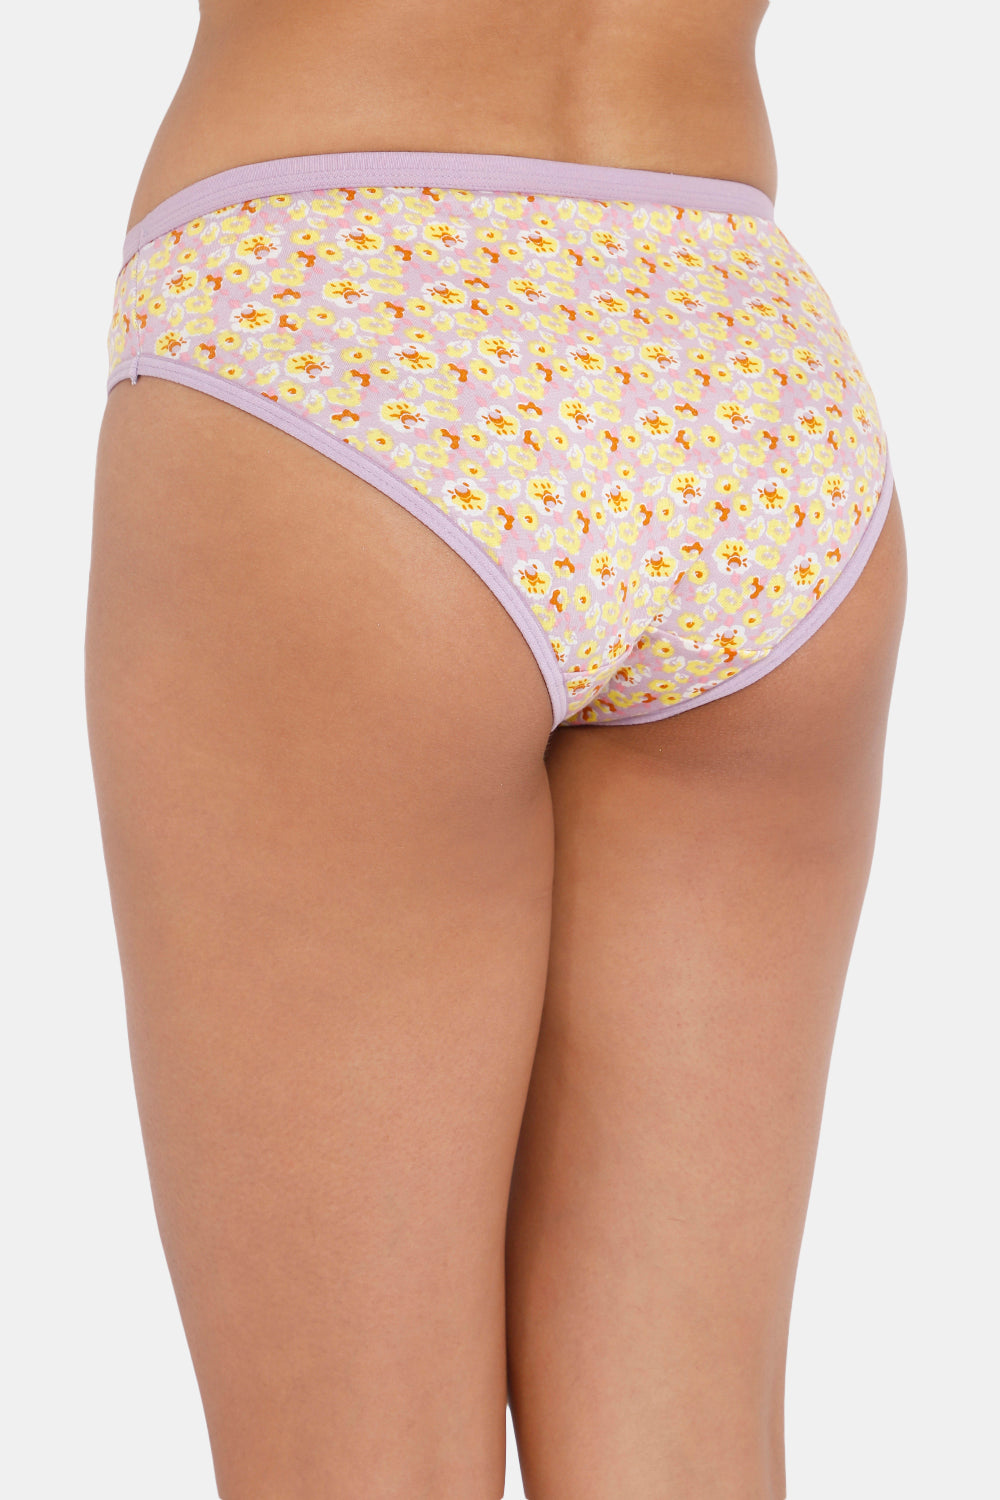 Intimacy Bikini Dark Printed Panty - Outer Elastic -Pack of 3 Size   M Color REGULAR_PANTIES